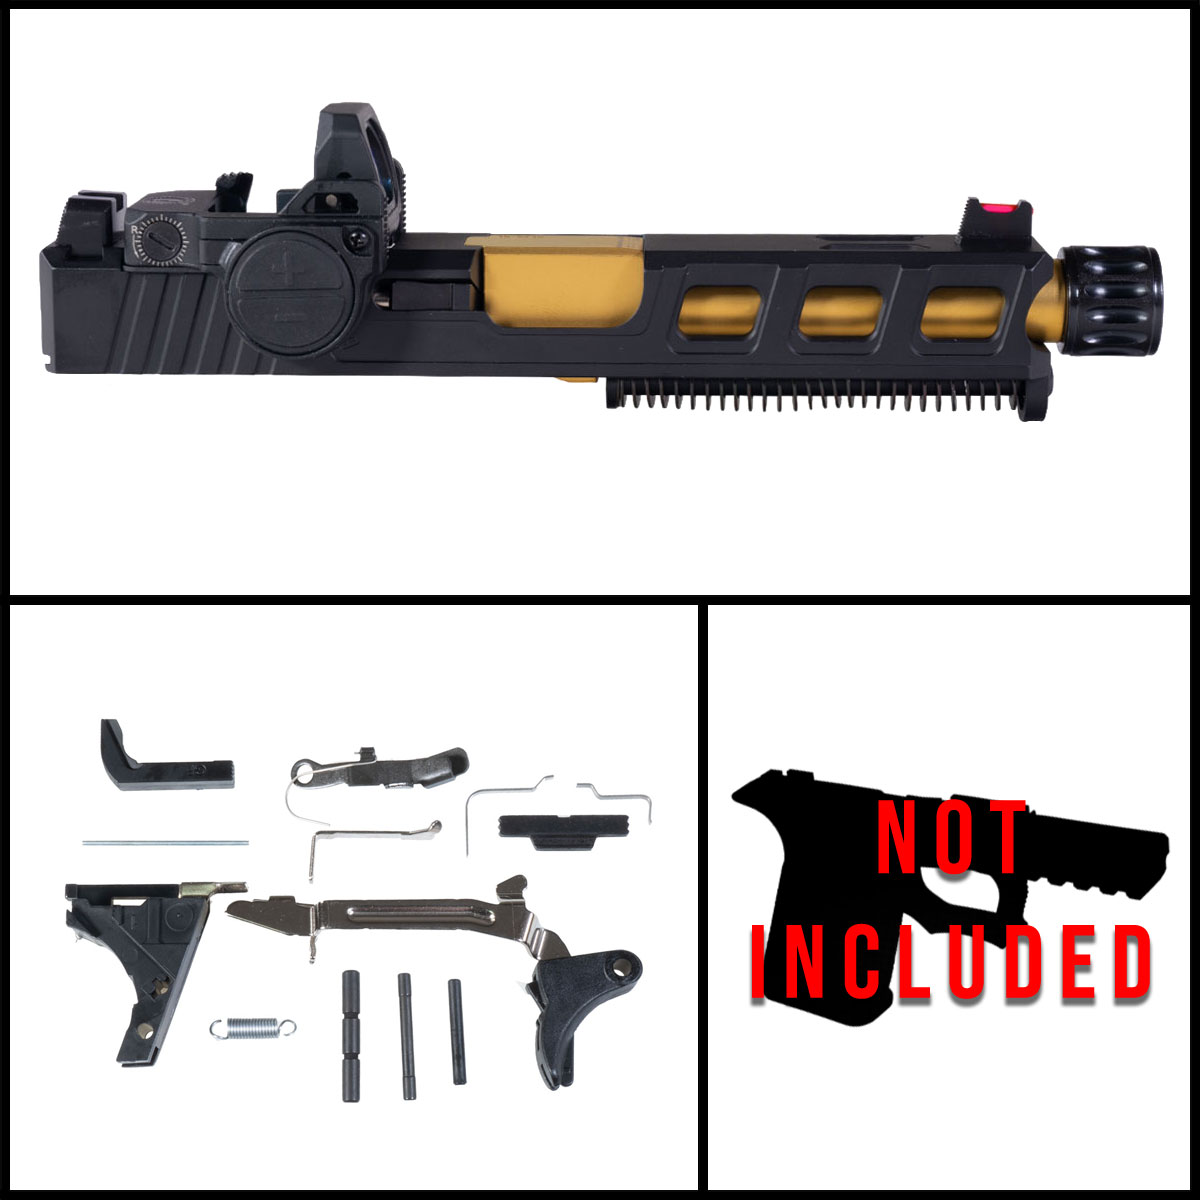 DTT 'Insidiae w/ VISM FlipDot Pro' 9mm Full Pistol Build Kit (Everything Minus Frame) - Glock 19 Gen 1-3 Compatible